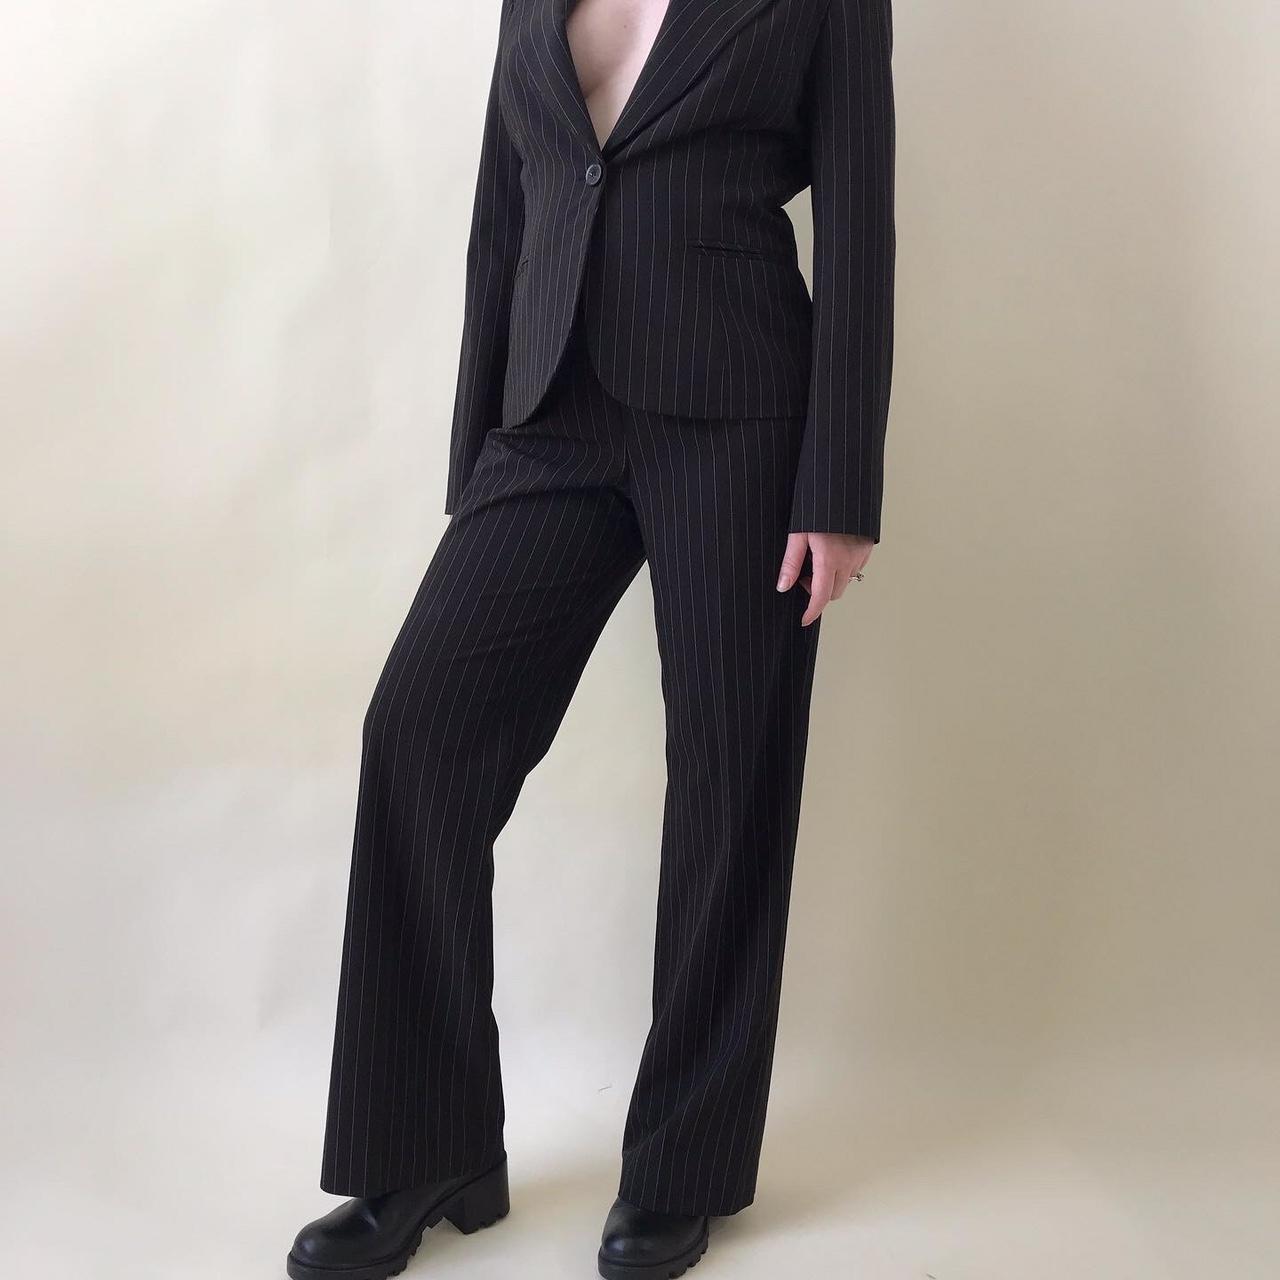 Nine West Women's Black Suit | Depop